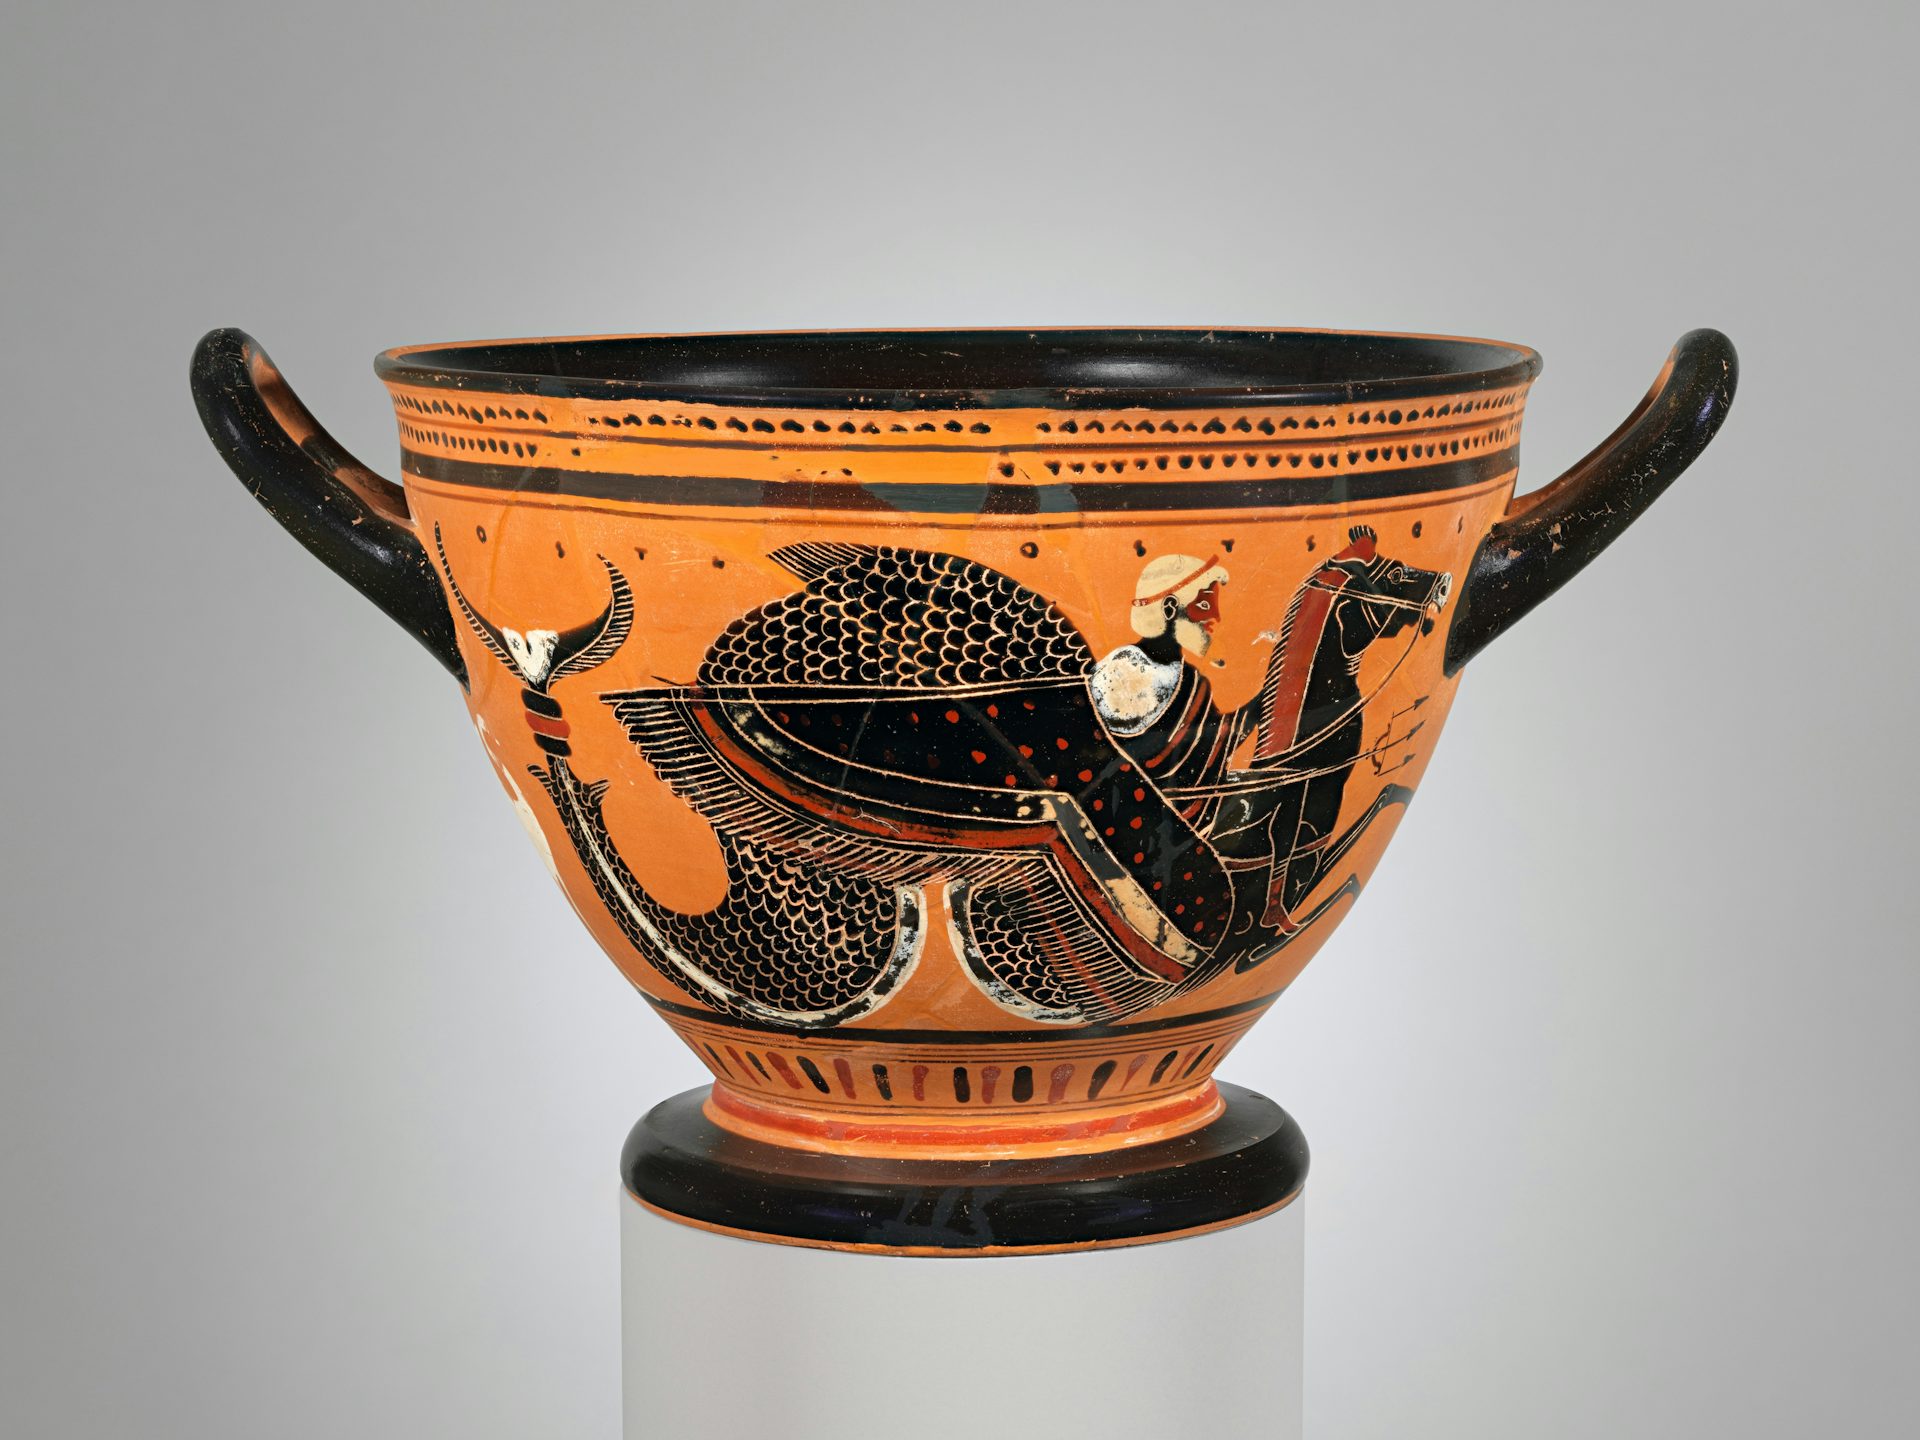 Poseidon vase CA 500 BCE